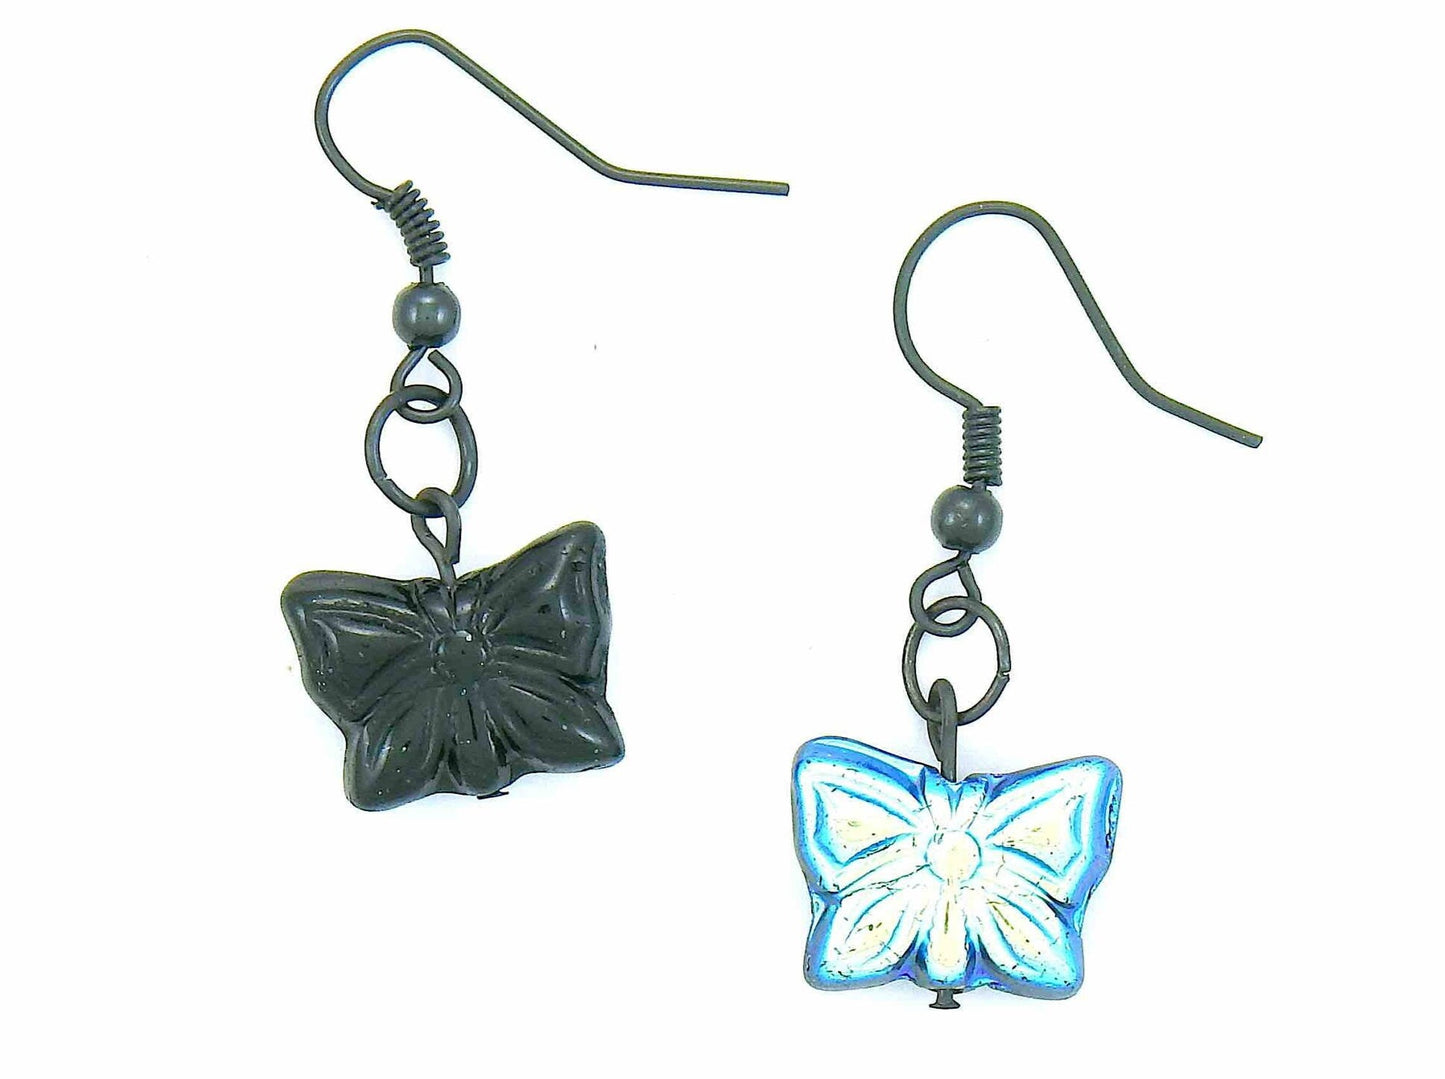 Boucles d'oreilles courtes papillons de verre tchèque noir et bleu iridescent, crochets métal noir